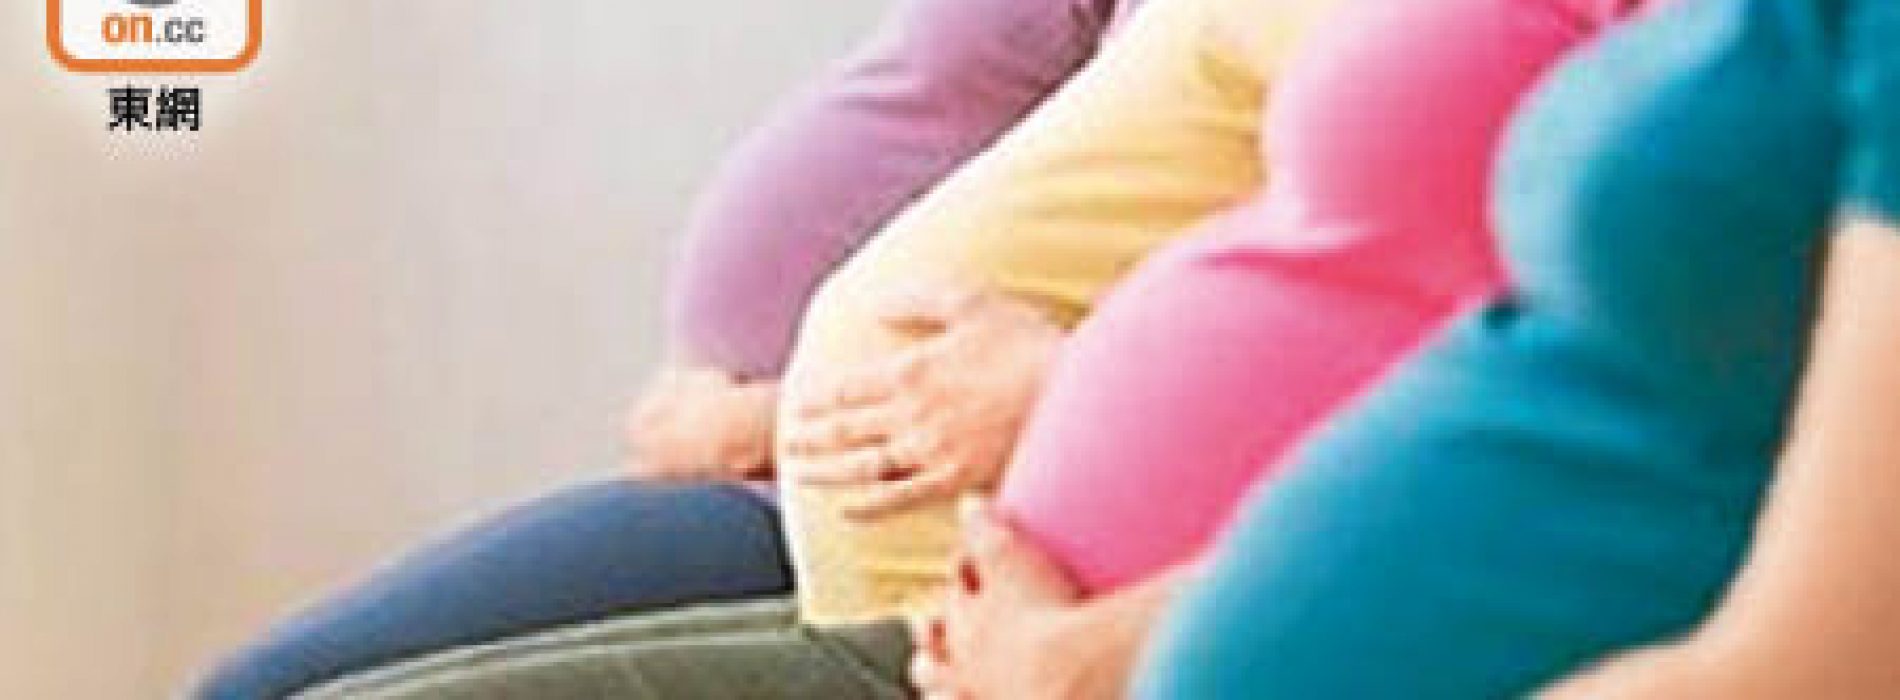 懷孕期暴食 嬰兒易低血糖